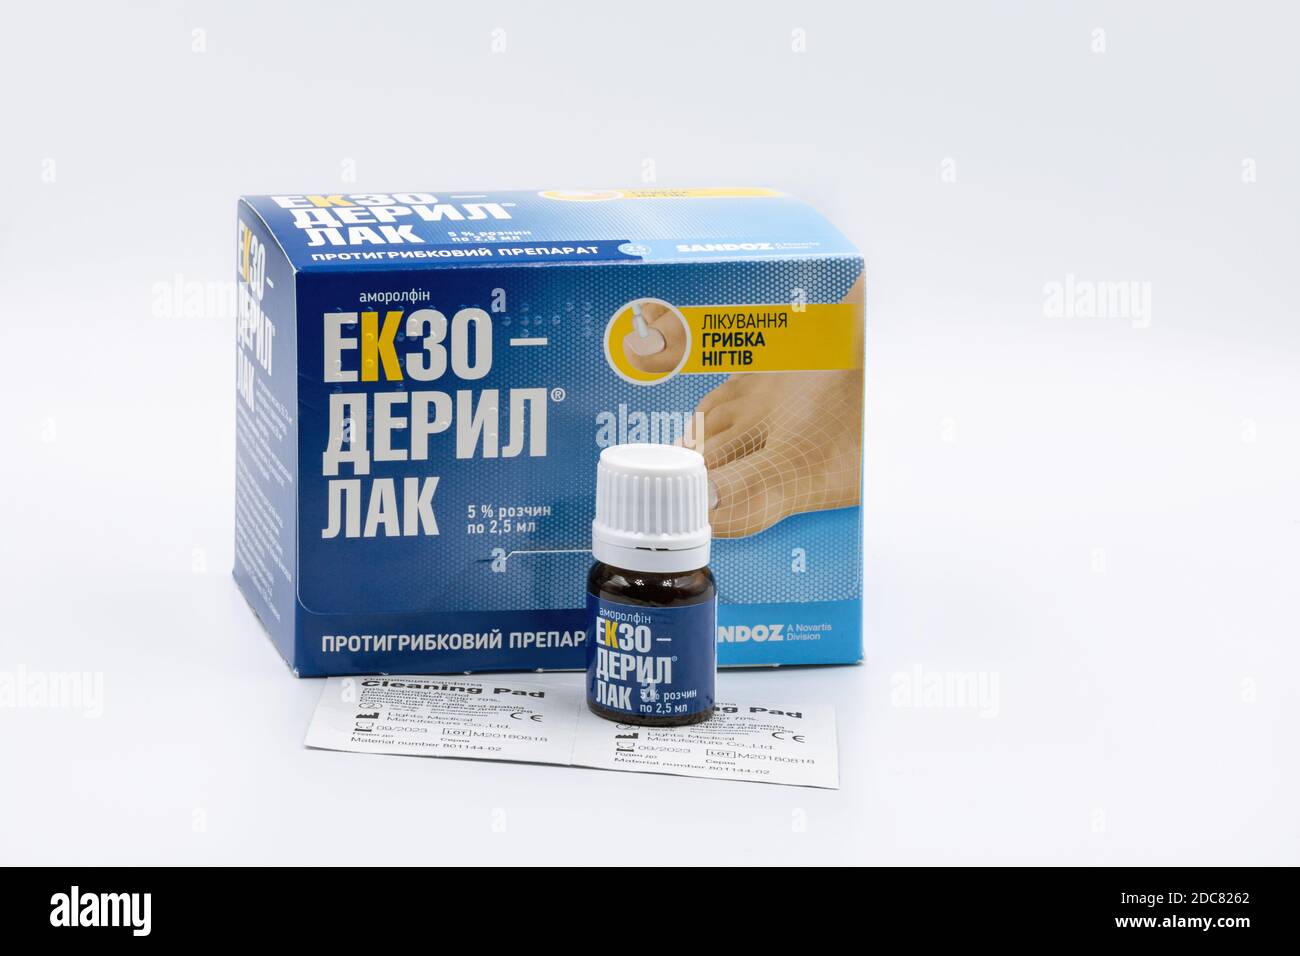 KIEV, UCRANIA - 14 DE NOVIEMBRE de 2020: Exo-deryl amorolfin esmalte de uñas de Sandoz Novartis para el tratamiento de la micosis primer plano contra el blanco. Foto de stock